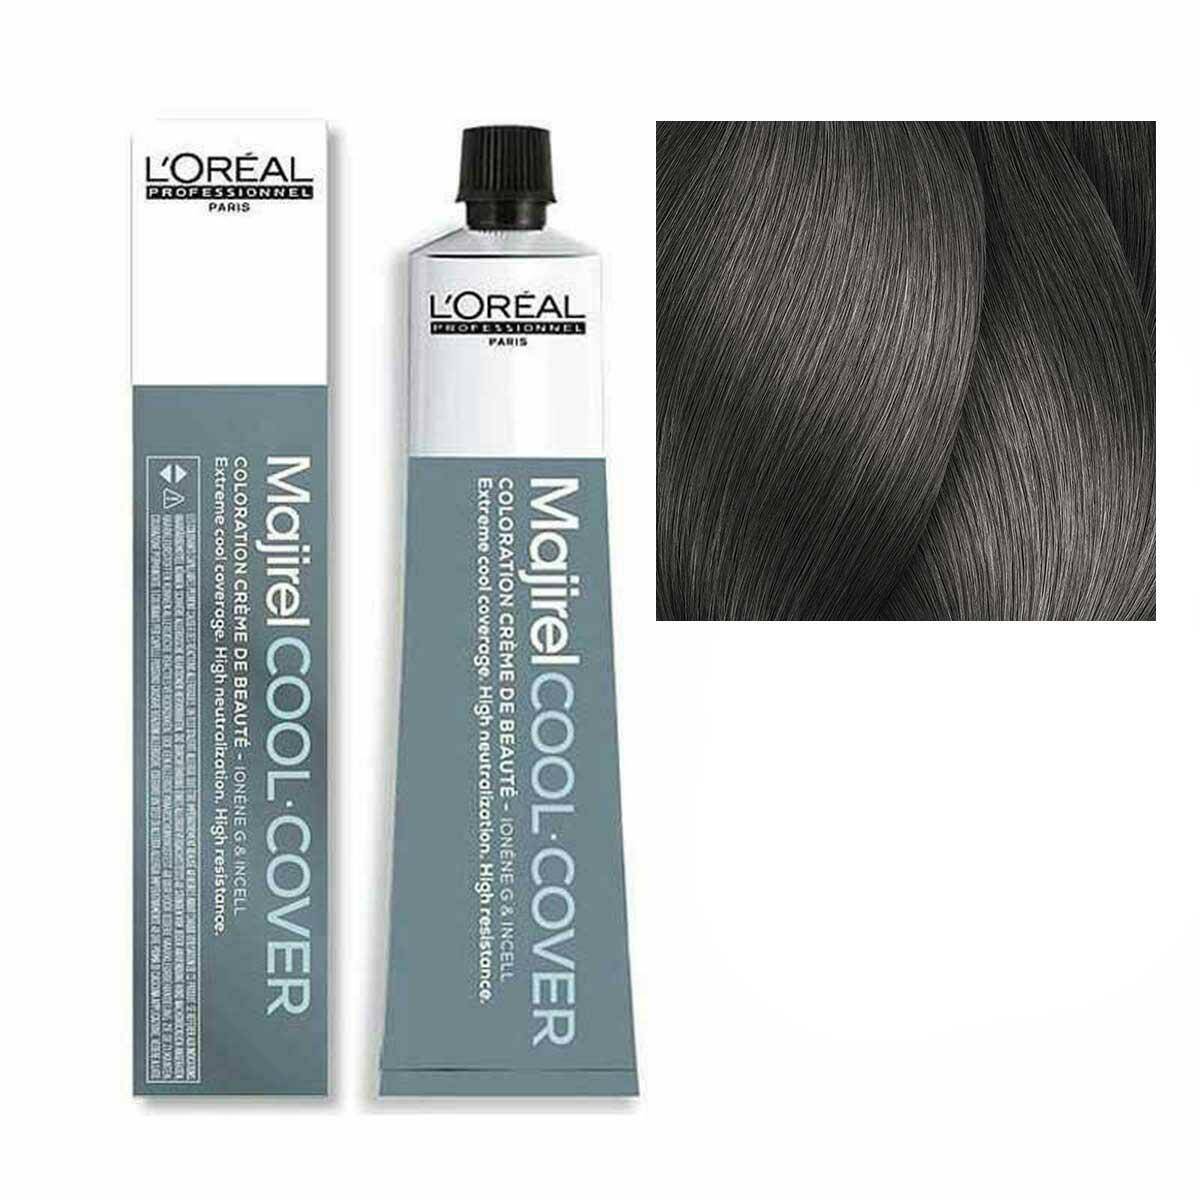 Loreal Majirel Cool Cover Farba do włosów - 7.11 Blond popielaty głęboki, chłodne odcienie 50ml